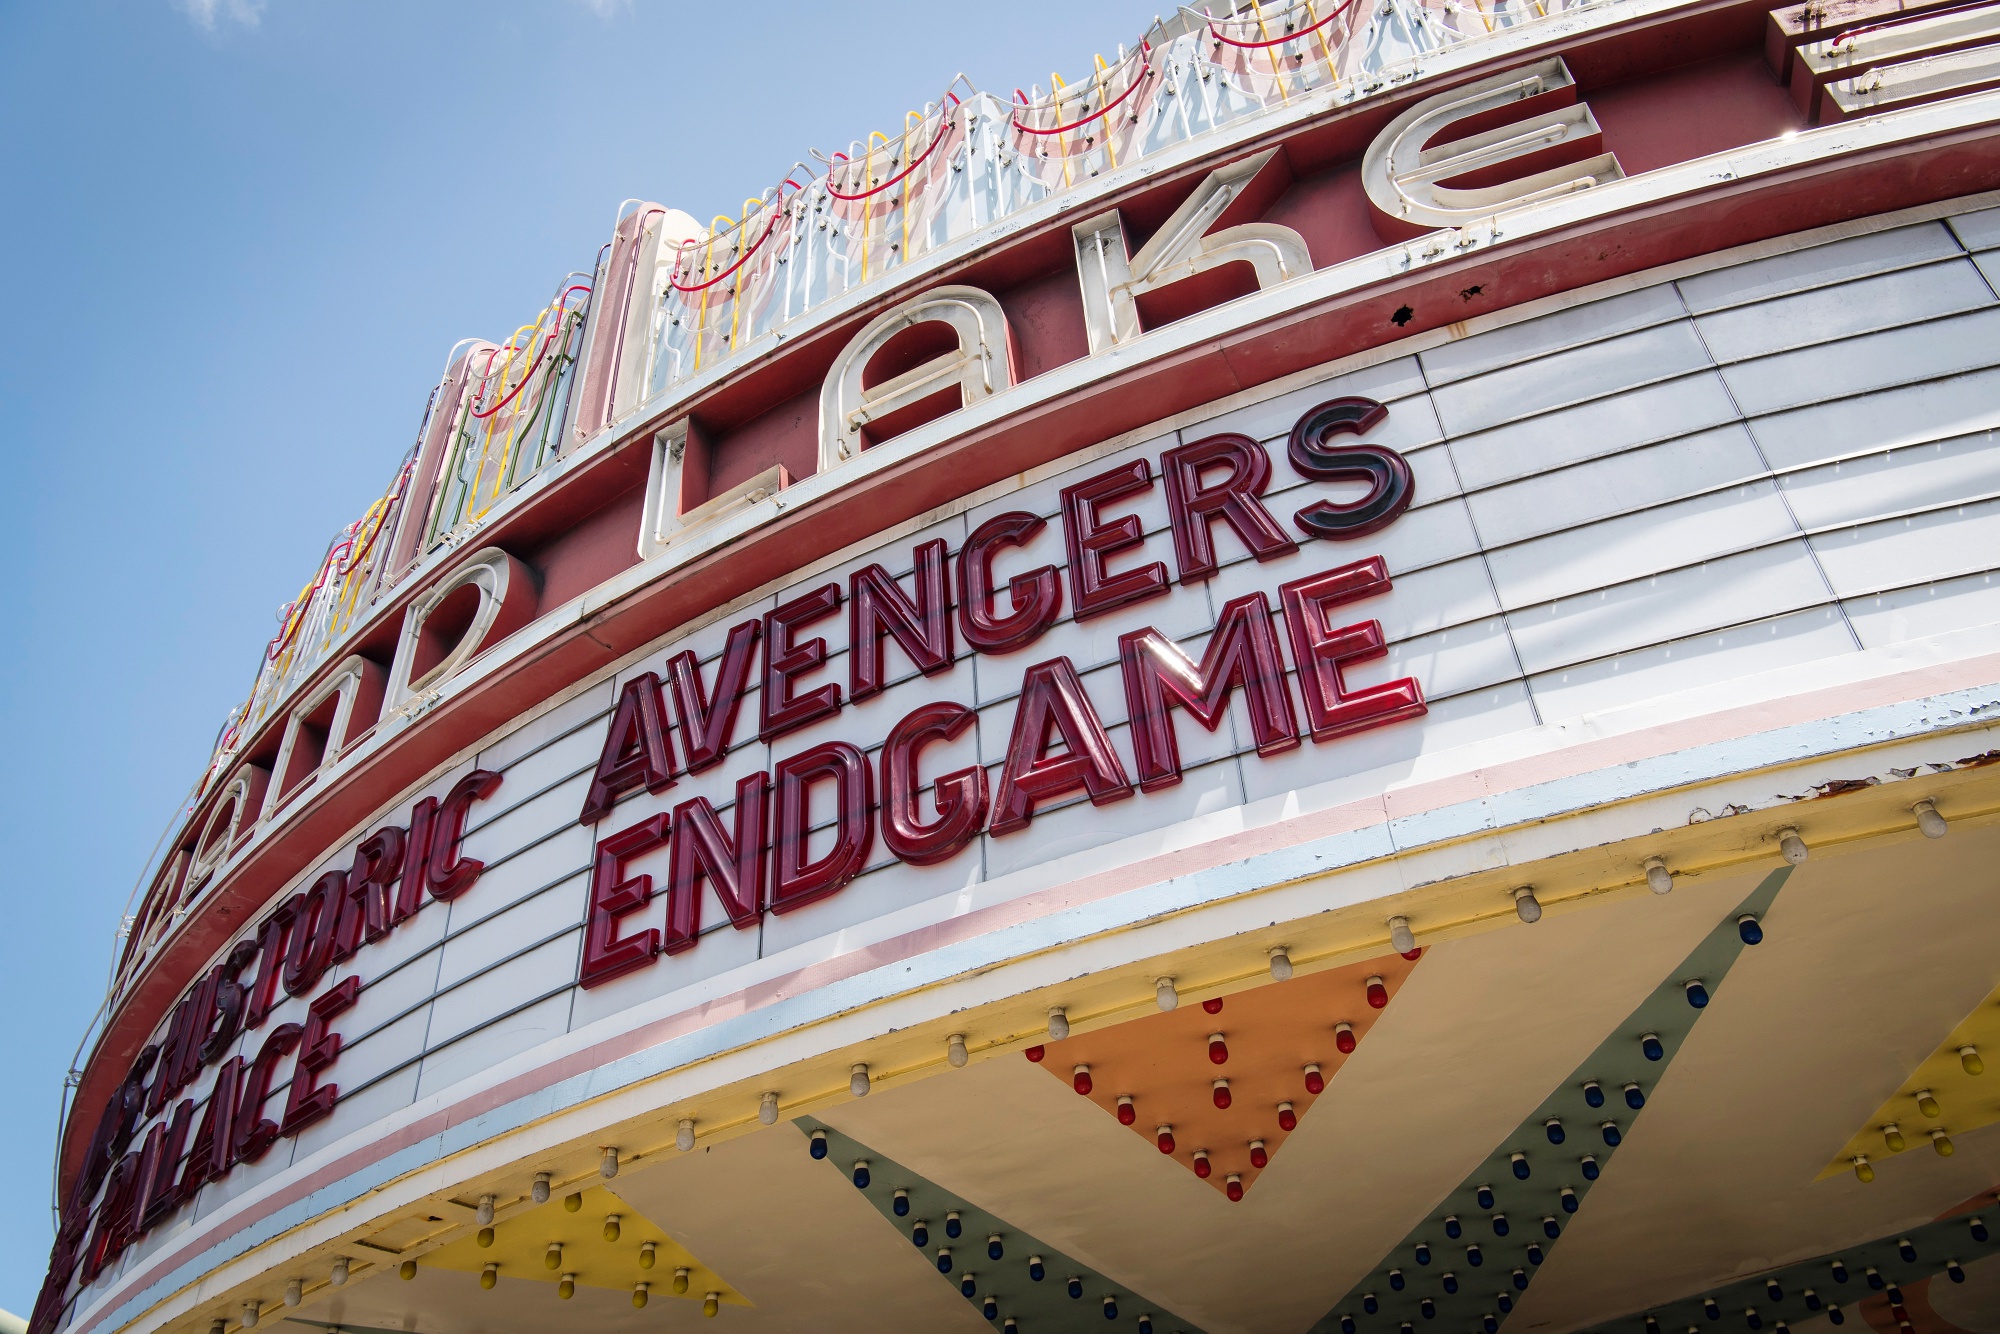 Vingadores: Endgame” vai voltar aos cinemas com uma versão alternativa – NiT